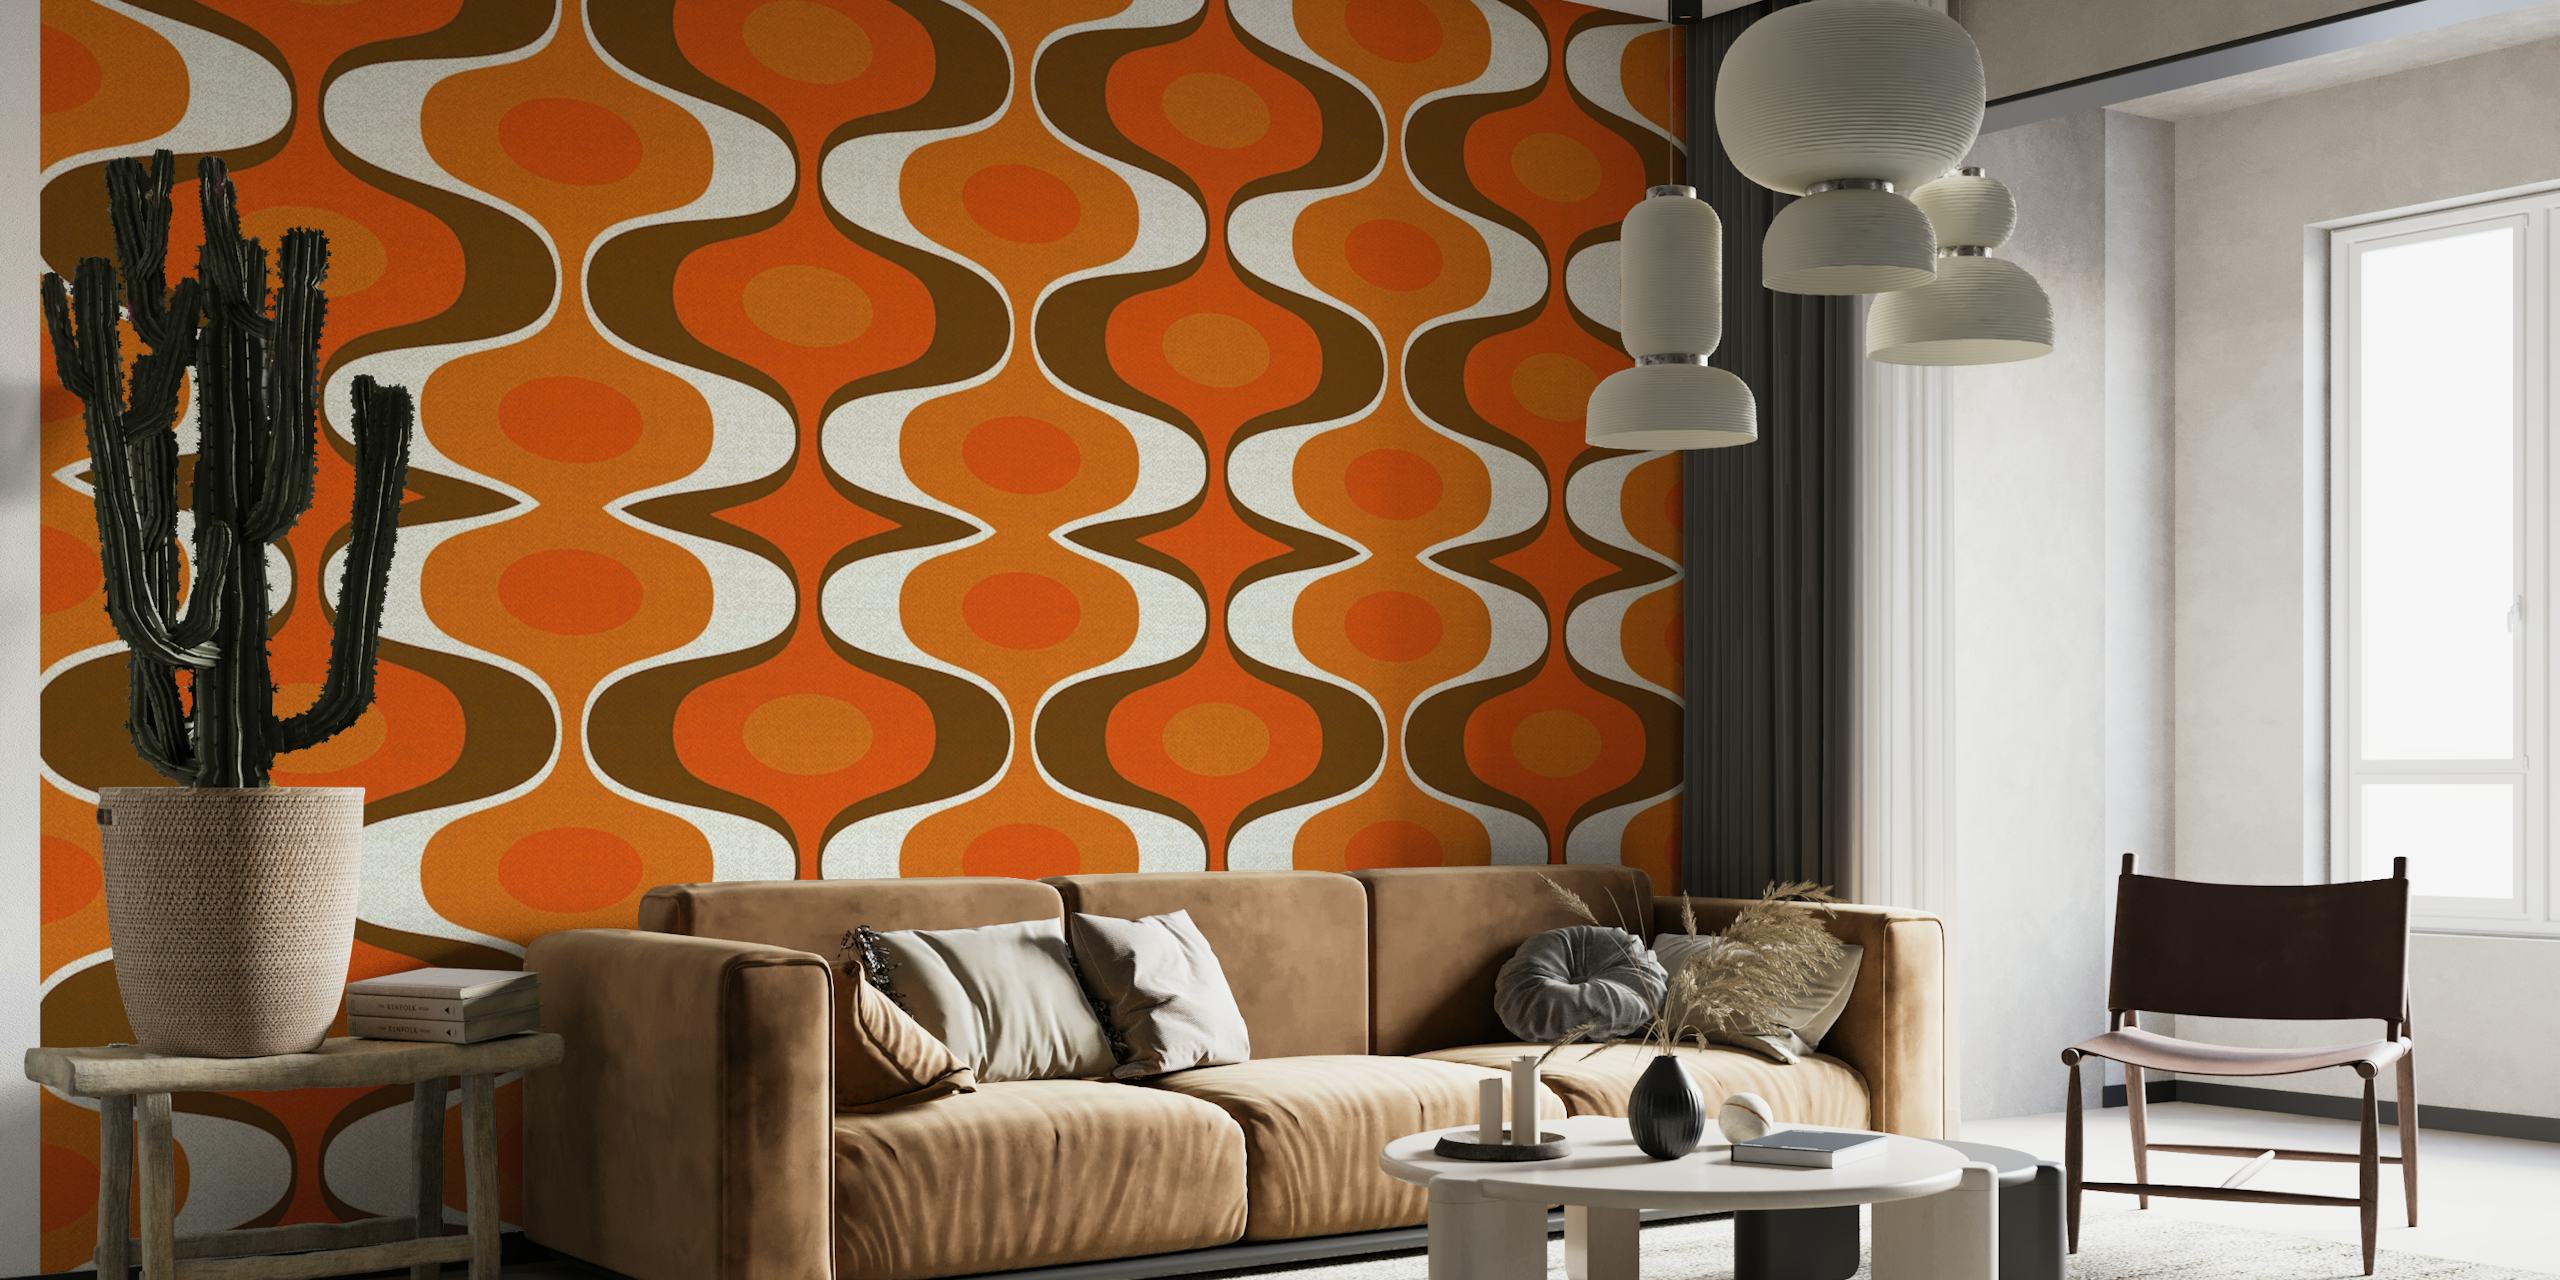 Vintage-vaikutteinen seinämaalaus, jossa on 70-luvun retro-groovy-kuvio oranssin ja ruskean väreissä.